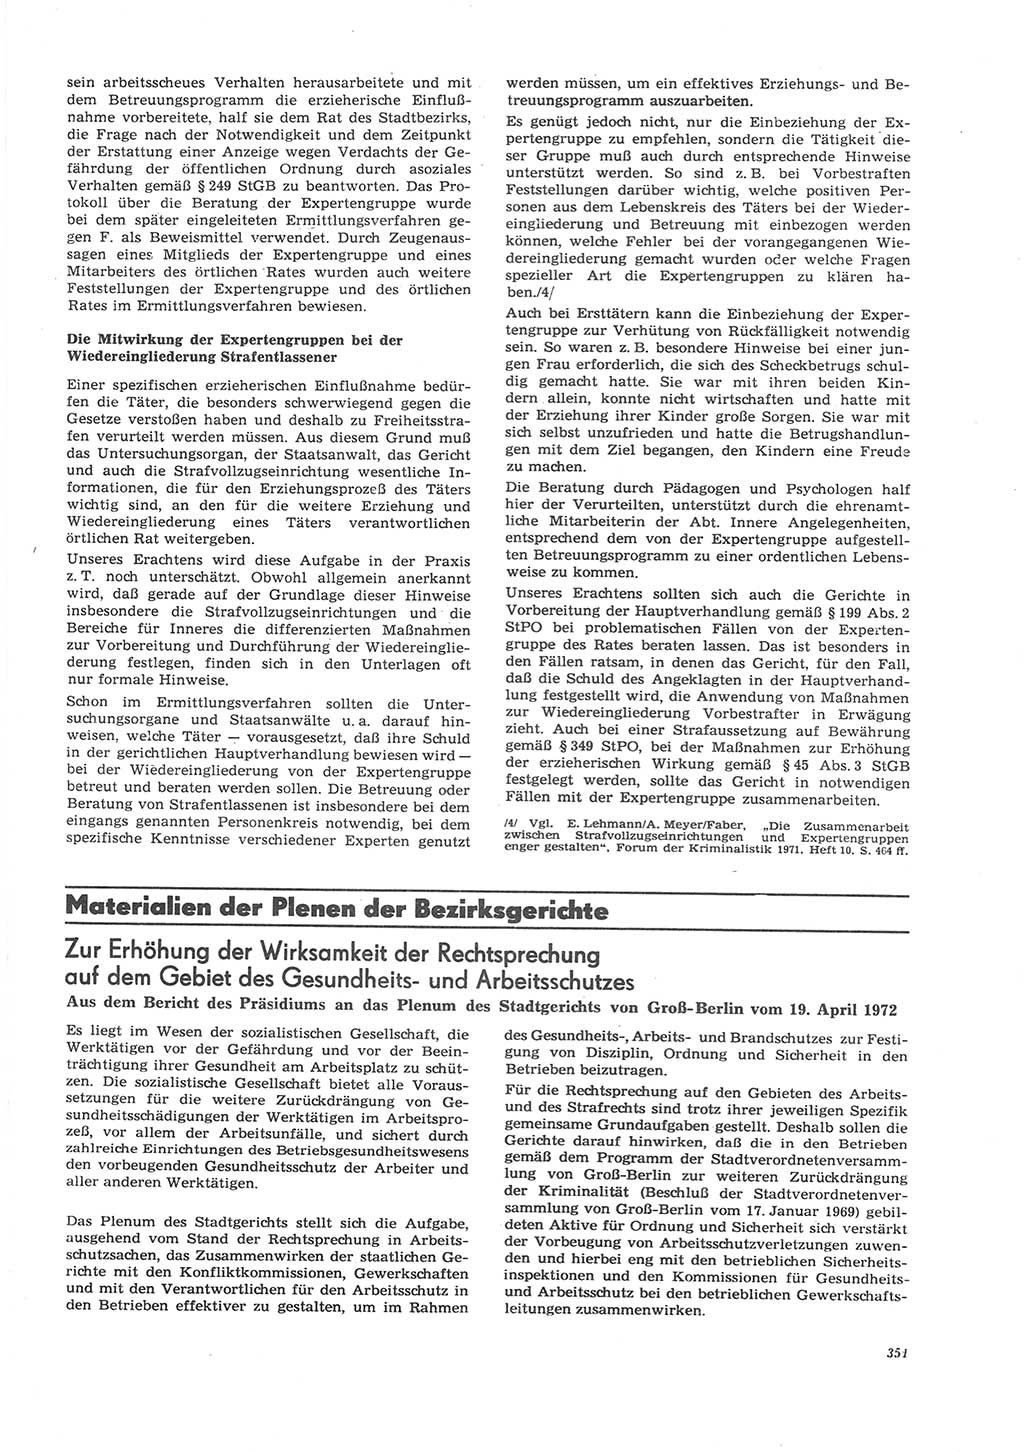 Neue Justiz (NJ), Zeitschrift für Recht und Rechtswissenschaft [Deutsche Demokratische Republik (DDR)], 26. Jahrgang 1972, Seite 351 (NJ DDR 1972, S. 351)